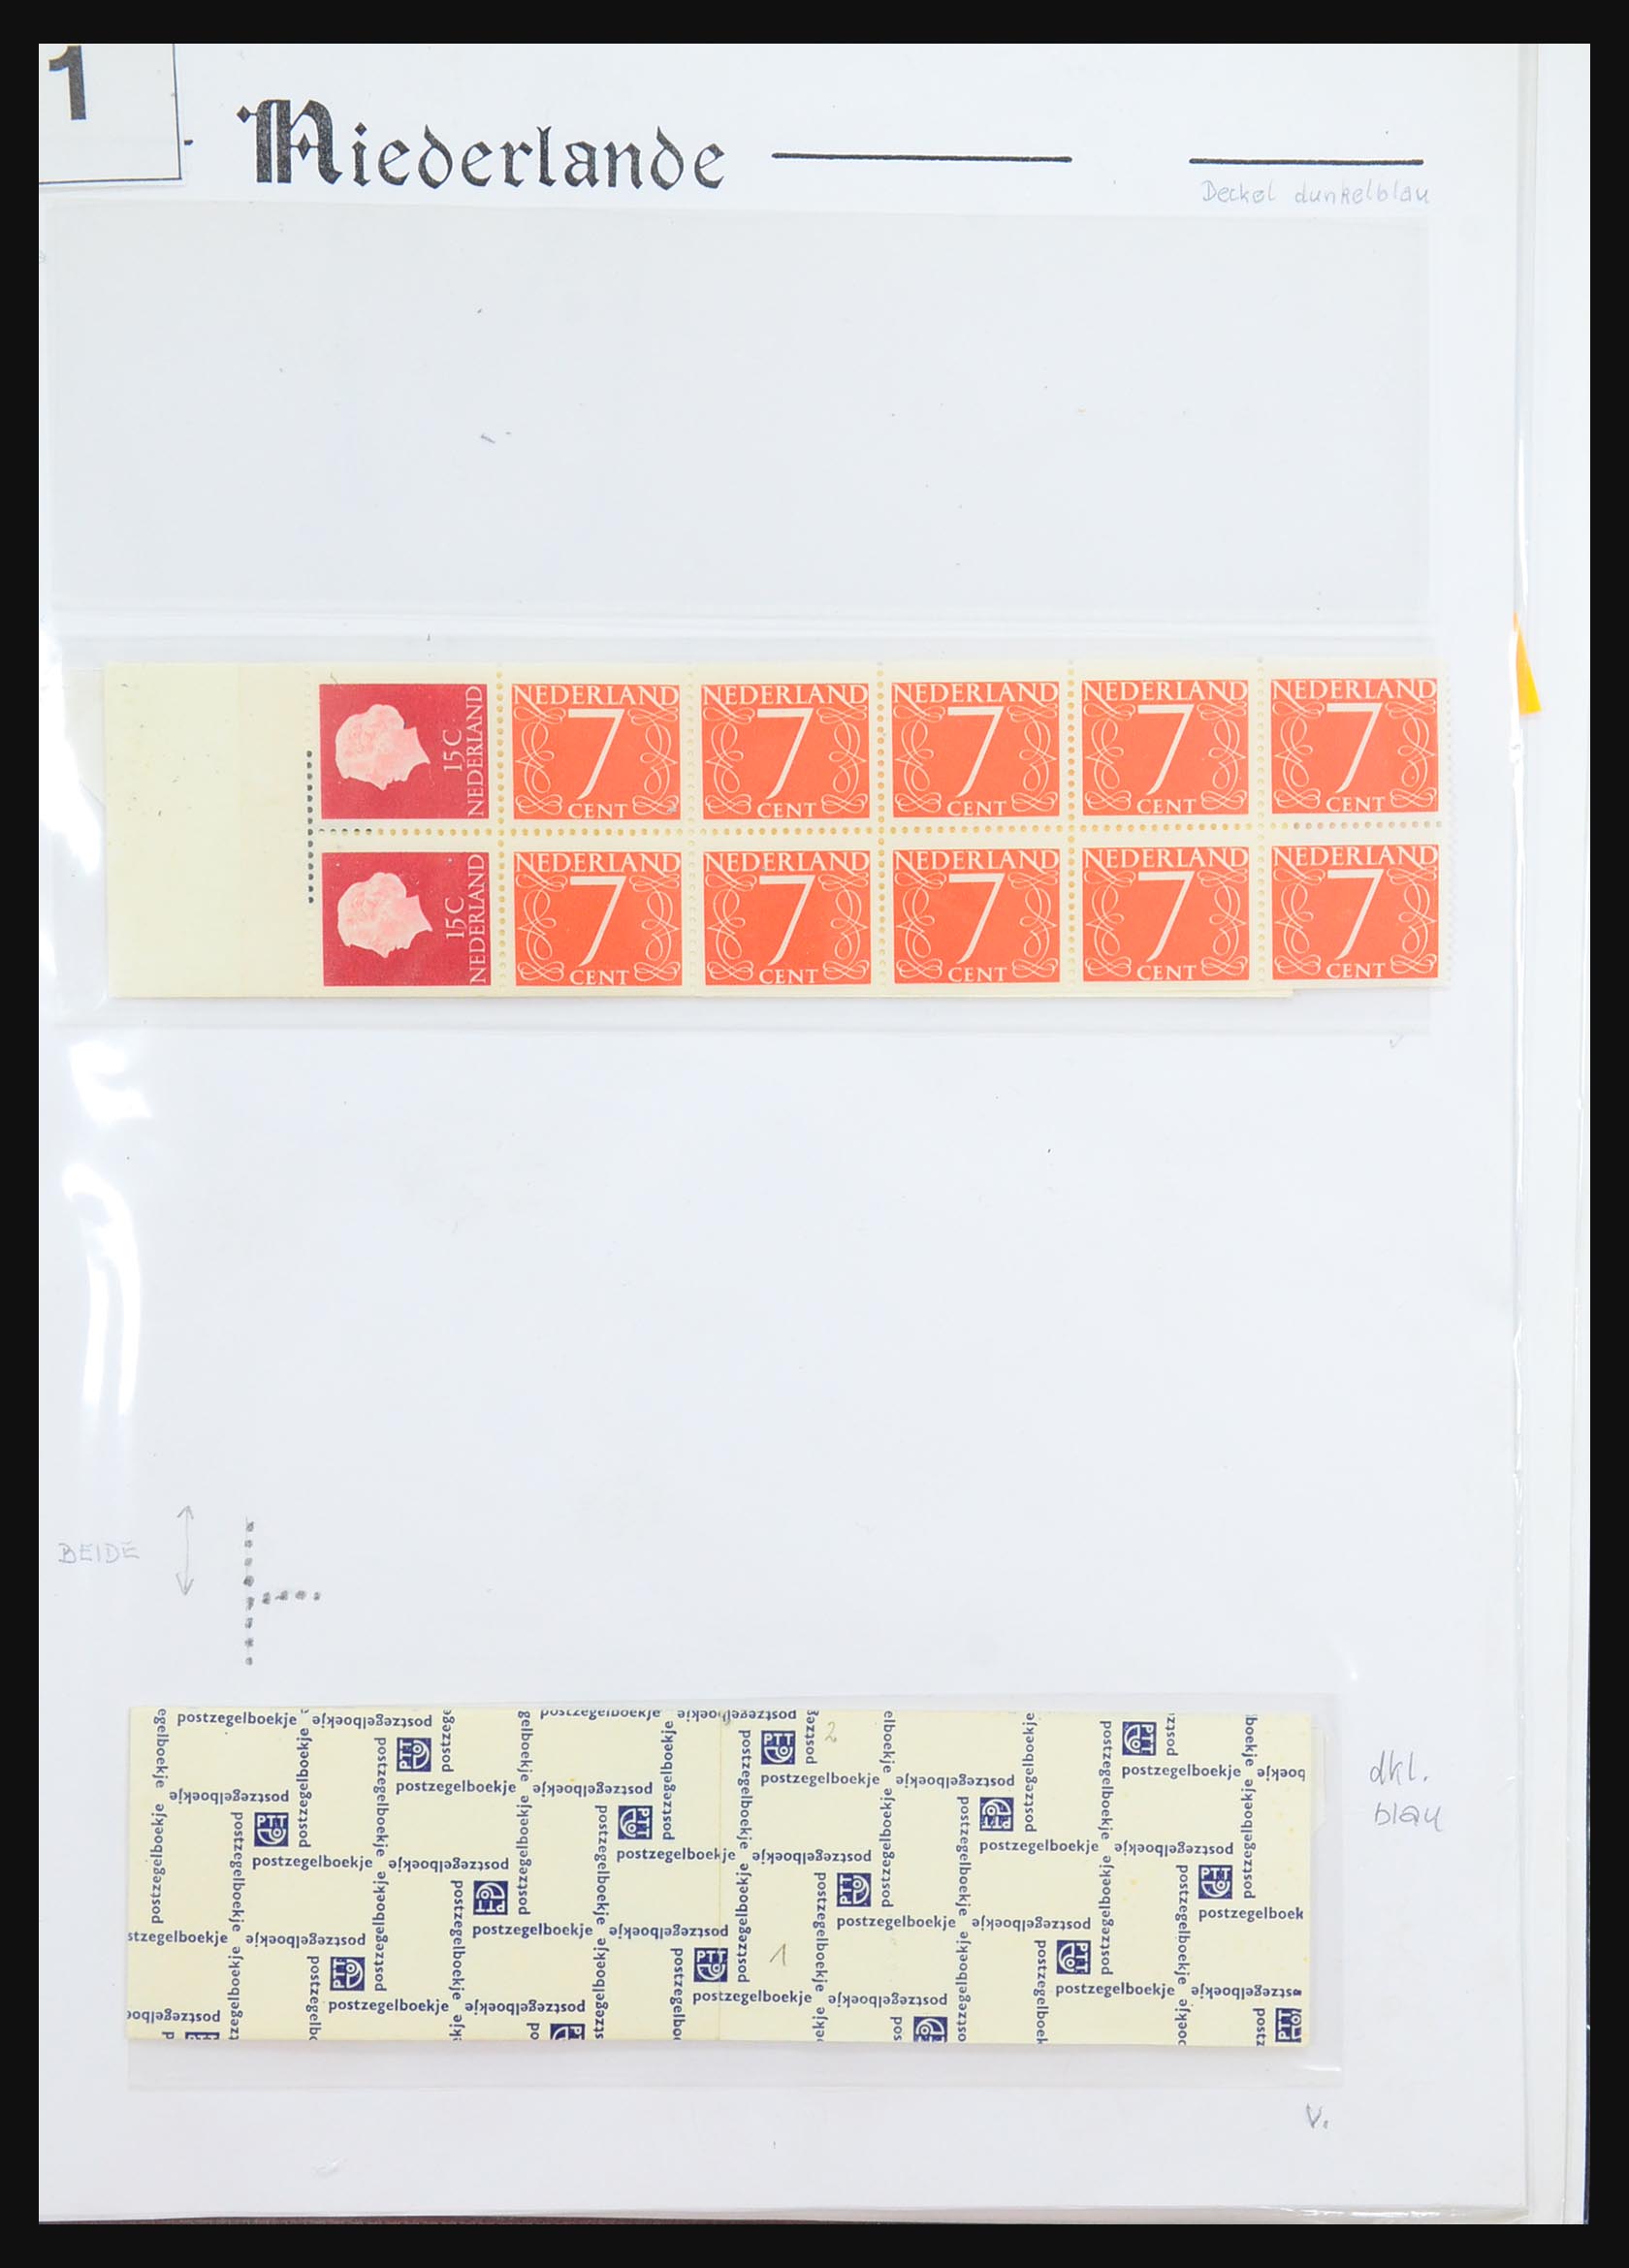 31311 001 - 31311 Netherlands stamp booklets 1964-1994.